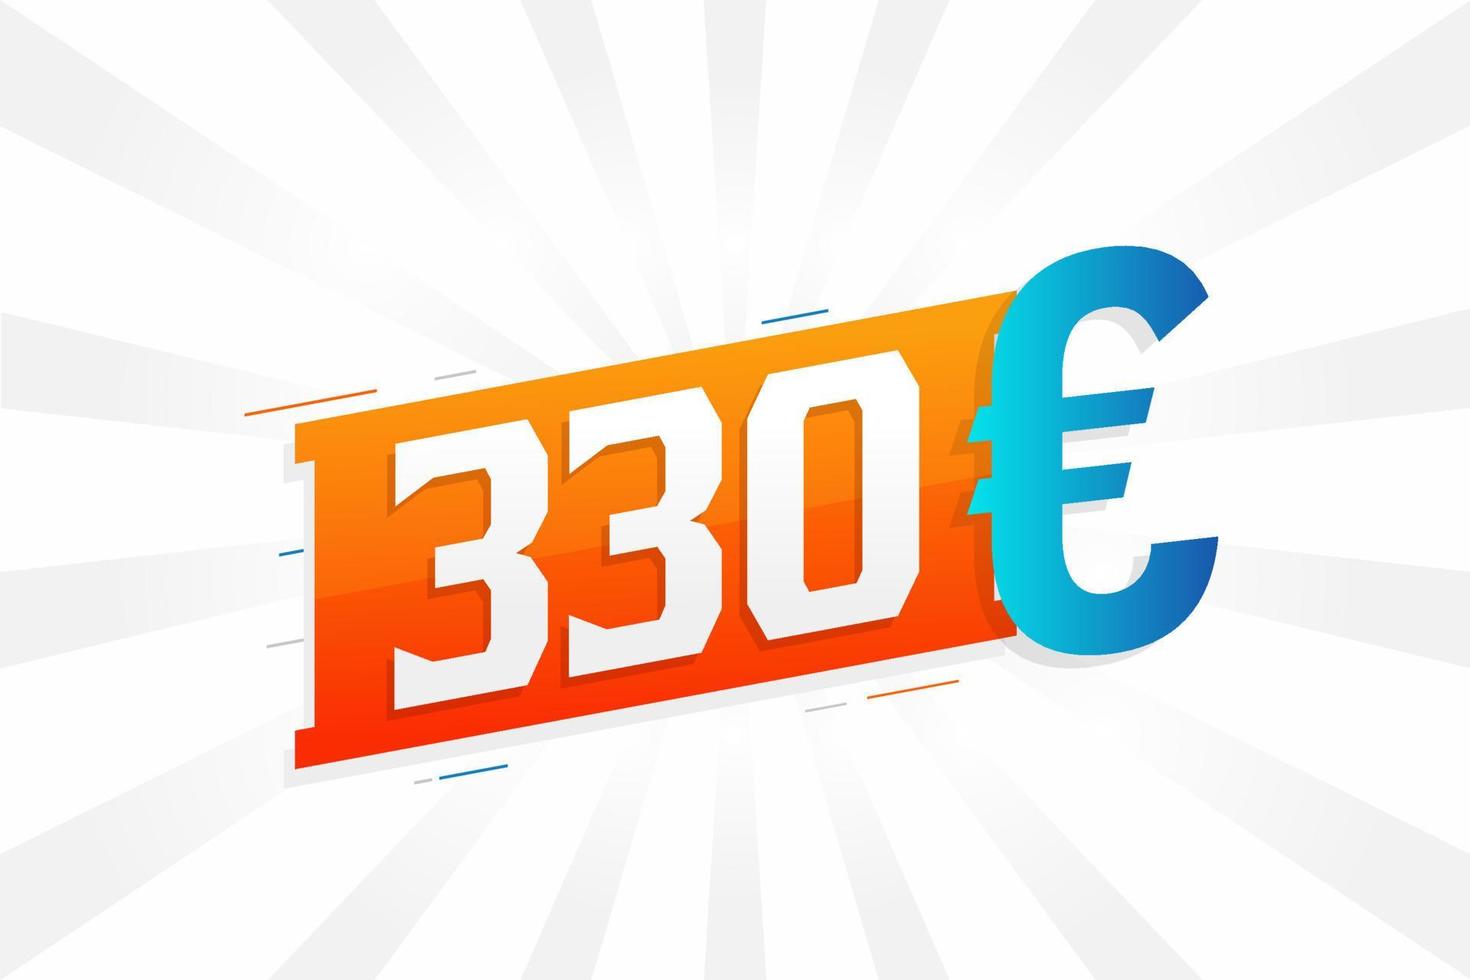 330-Euro-Währungsvektor-Textsymbol. 330 Euro Geldvorratvektor der Europäischen Union vektor